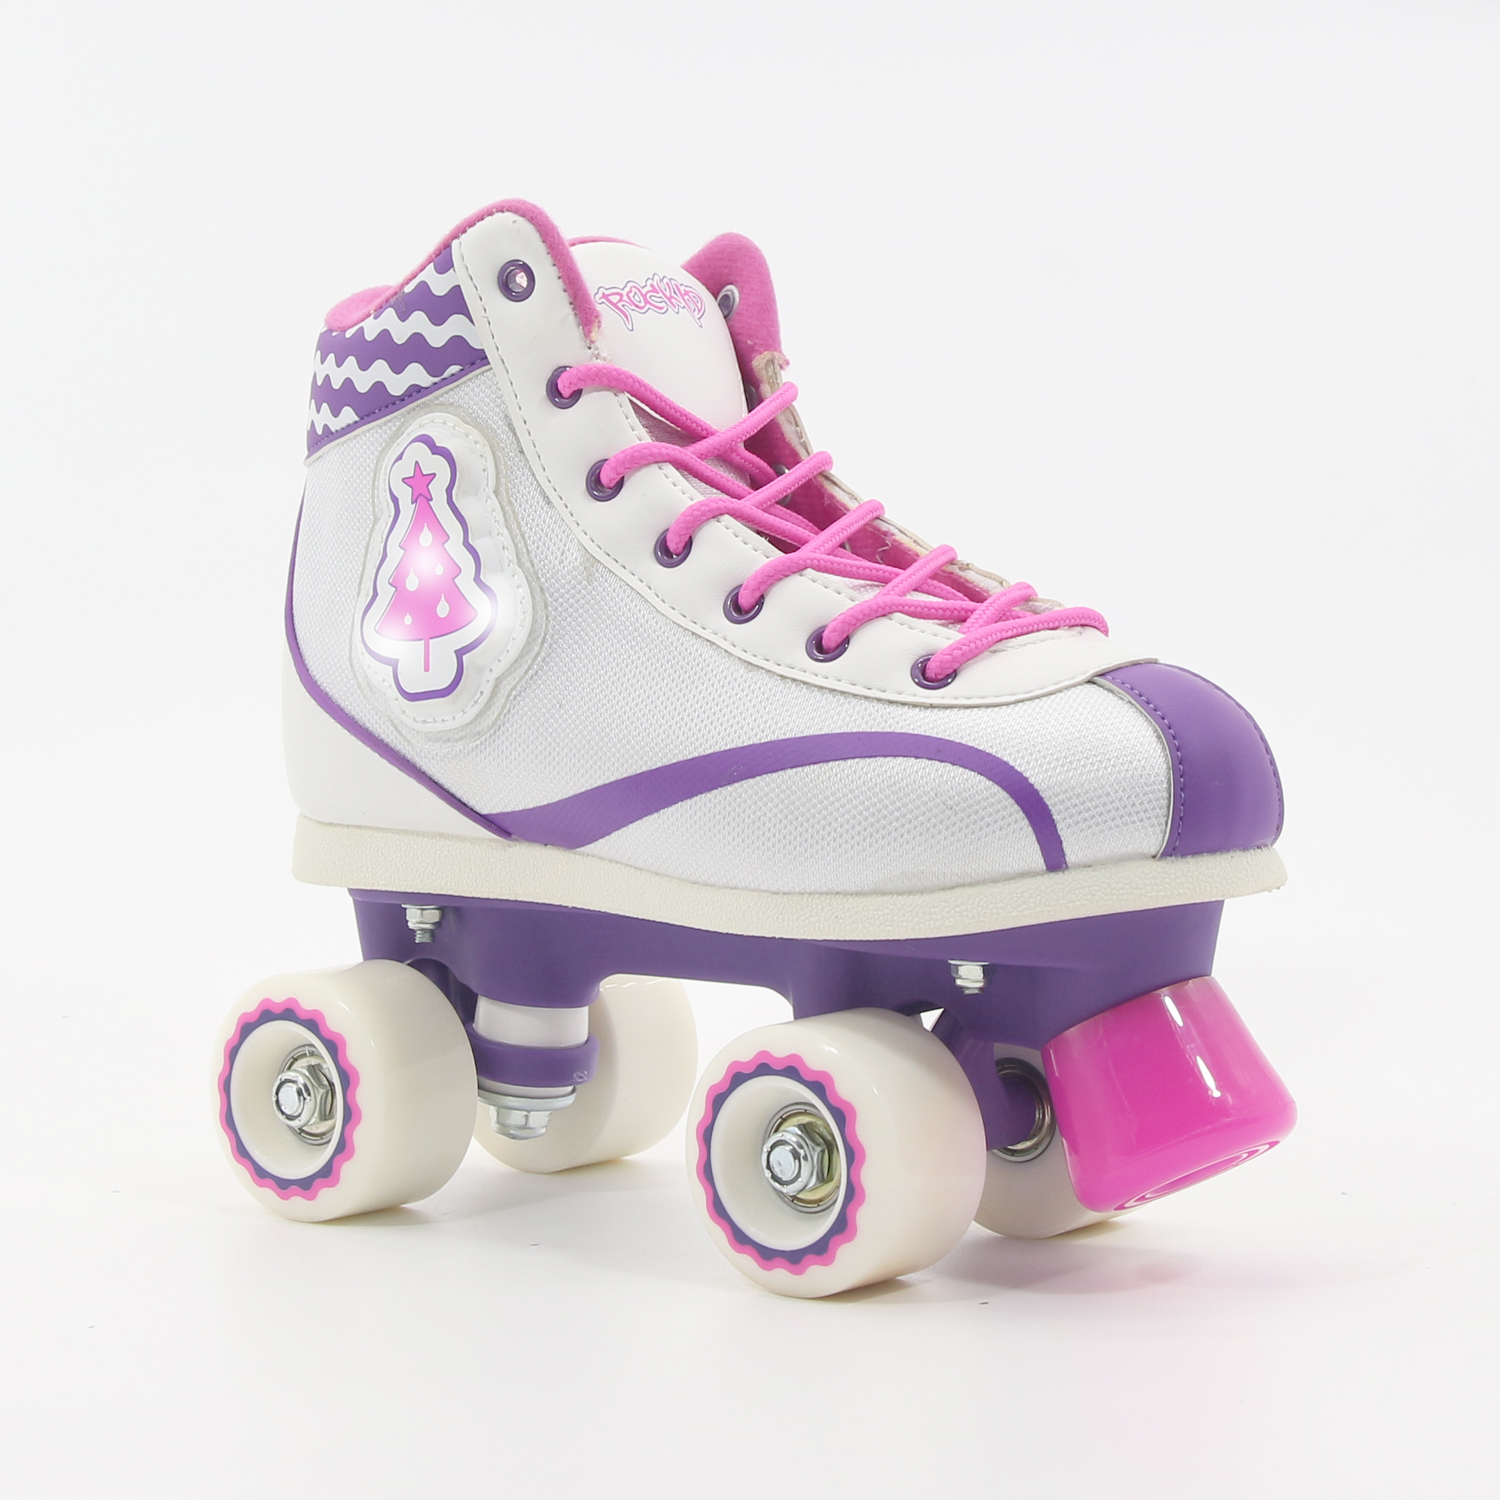 Blinkender Sneaker Quad Roller Skate für Kinder